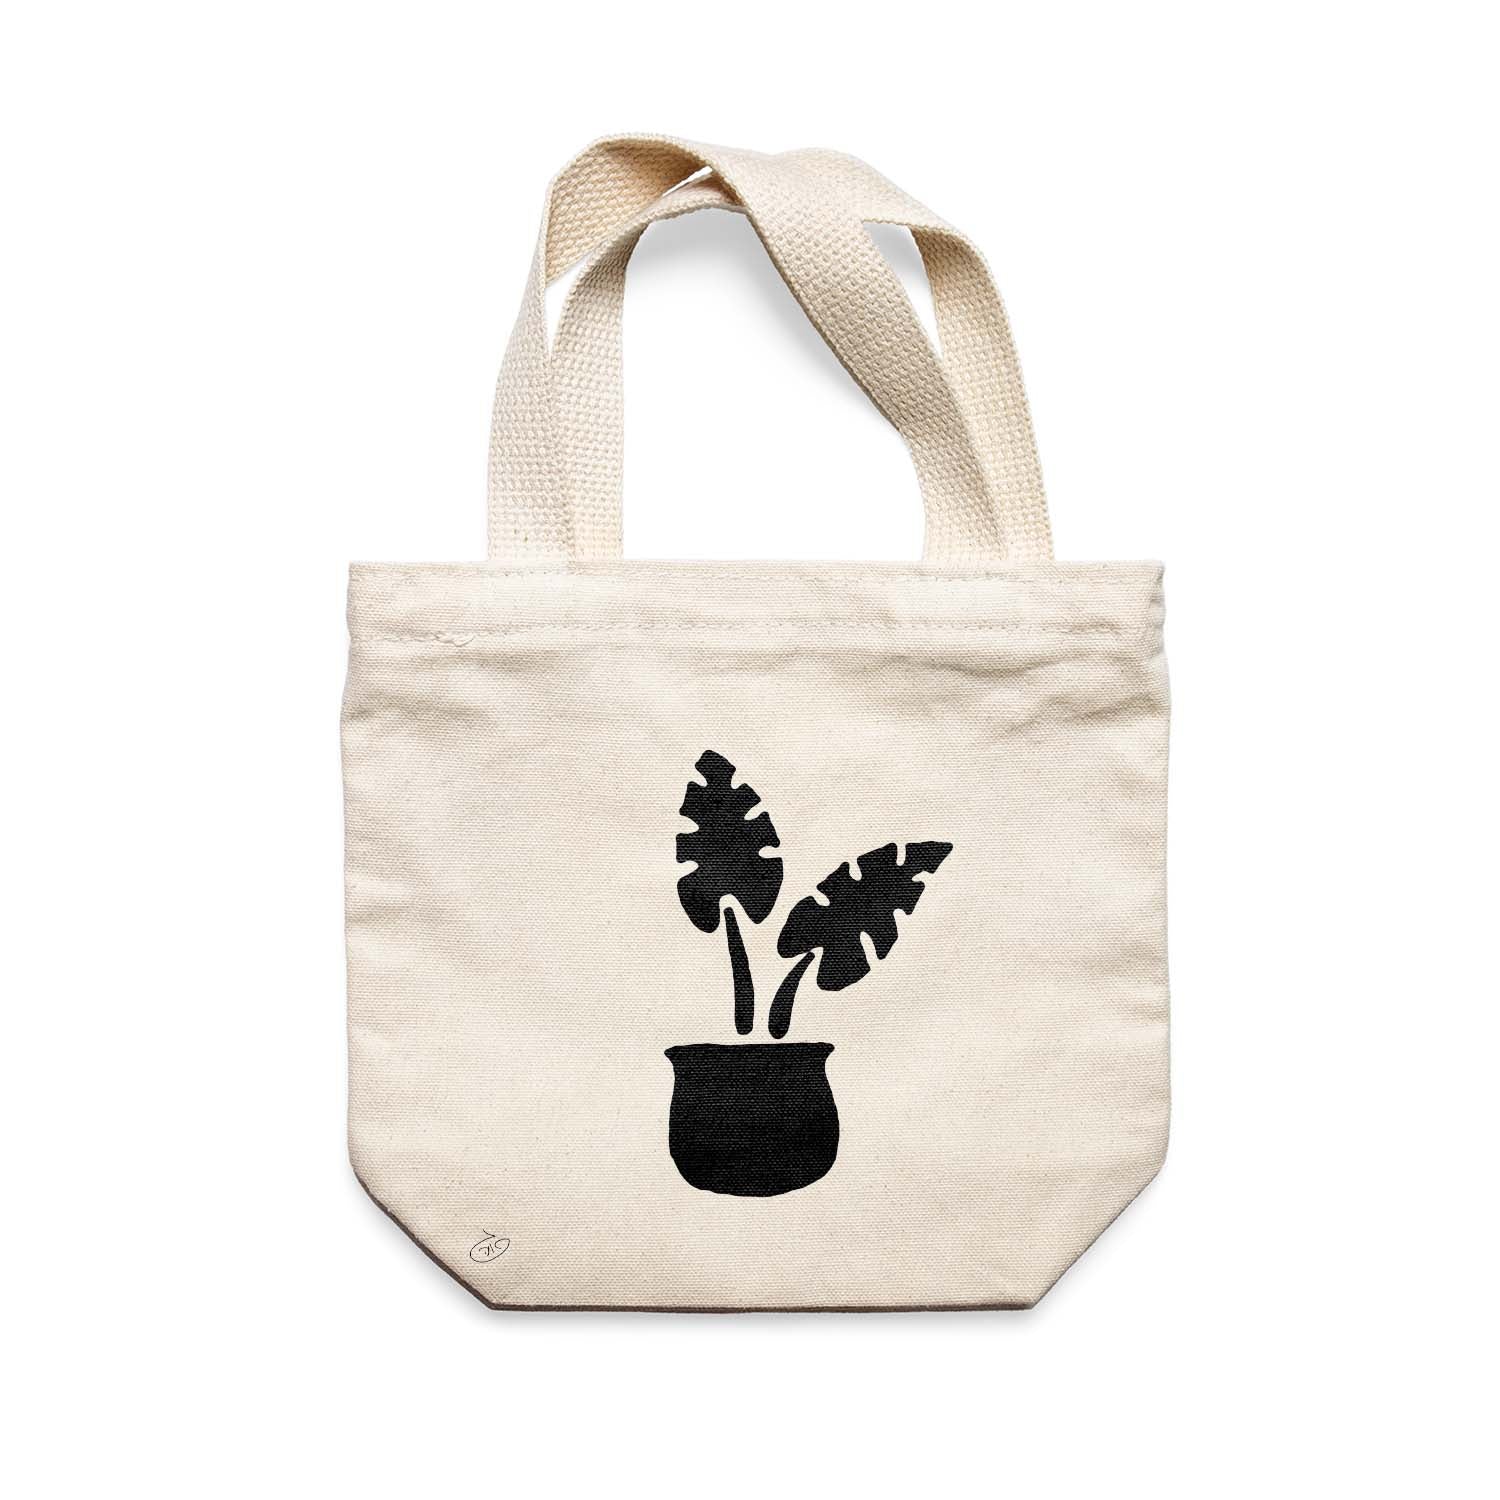 תיק צד לנשים וגברים מבד 100% כותנה טבעית בעיצוב Succulent Monstera Tote Bag מציור מקורי של גאיה